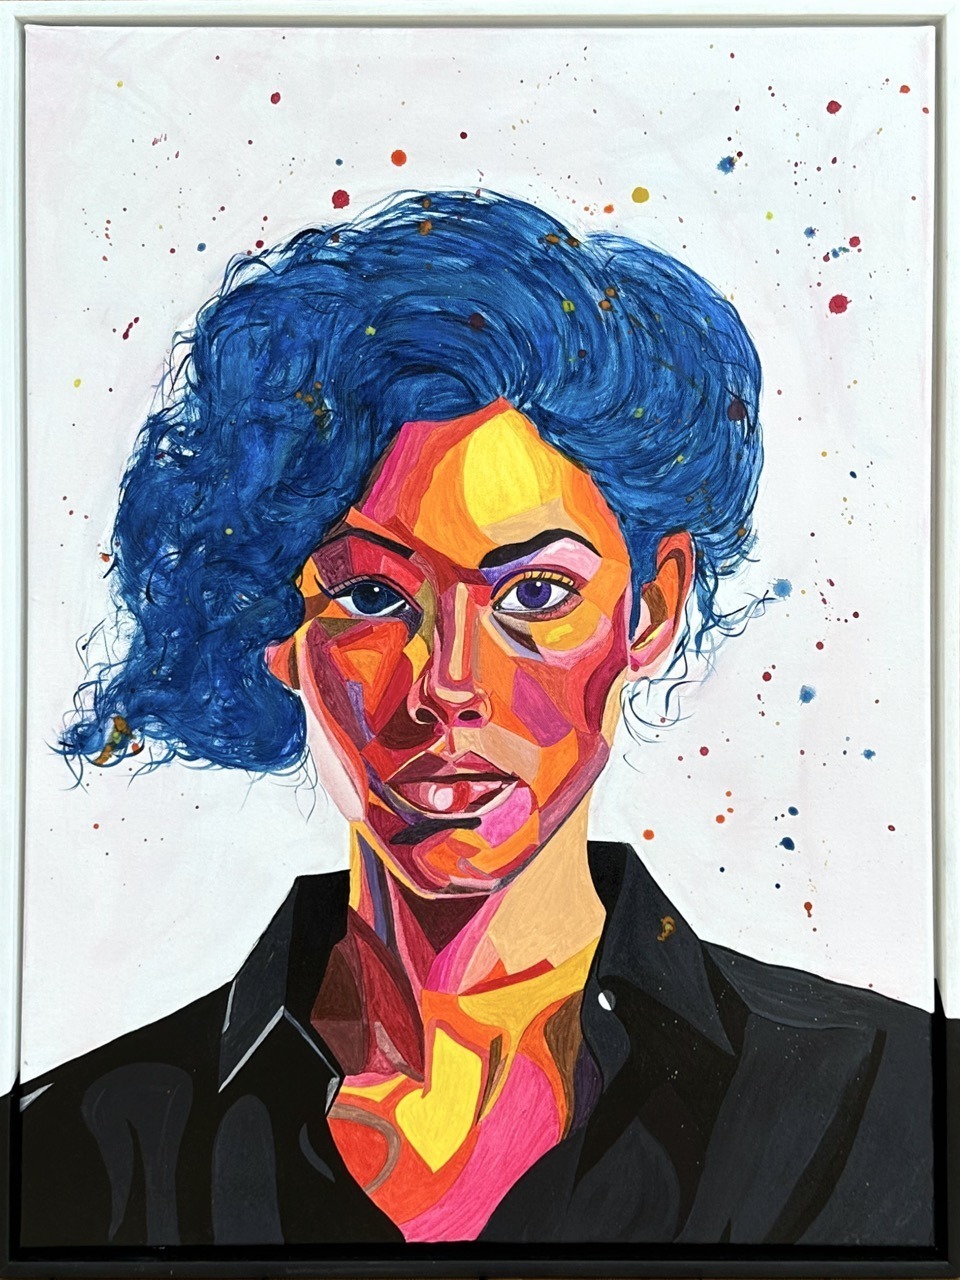 Für Pia, das einzigartige Portrait der Künstlerin Sarina Rick.